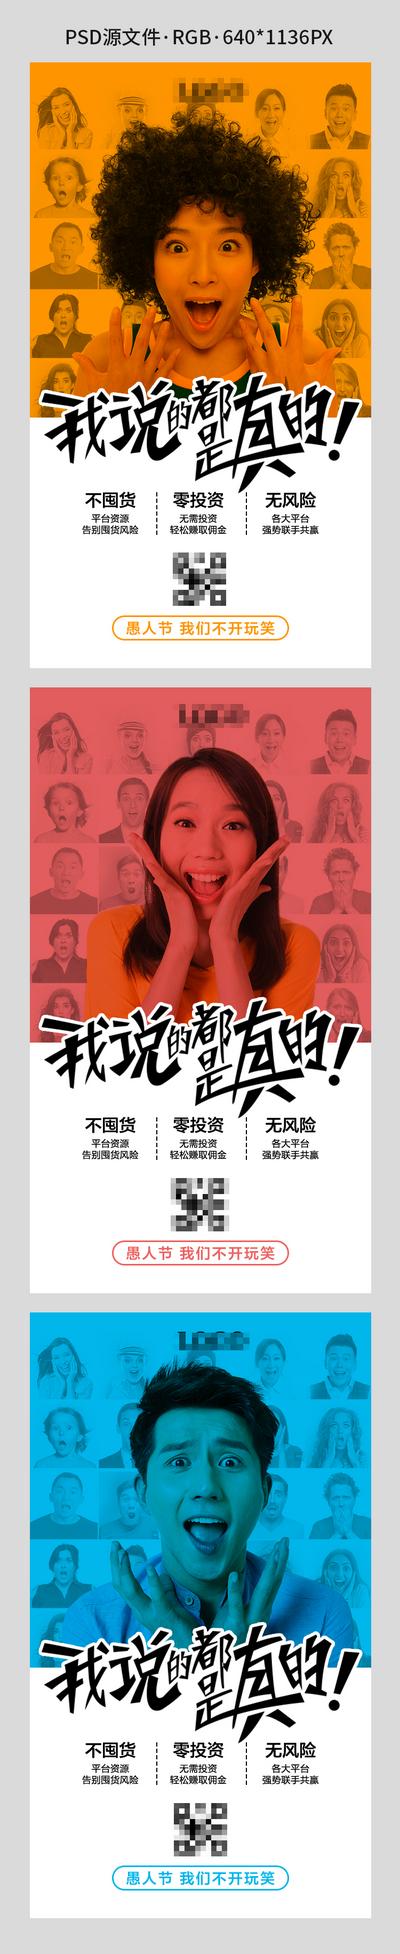 南门网 海报 产品 招商 人物 创意 公历节日 愚人节 系列